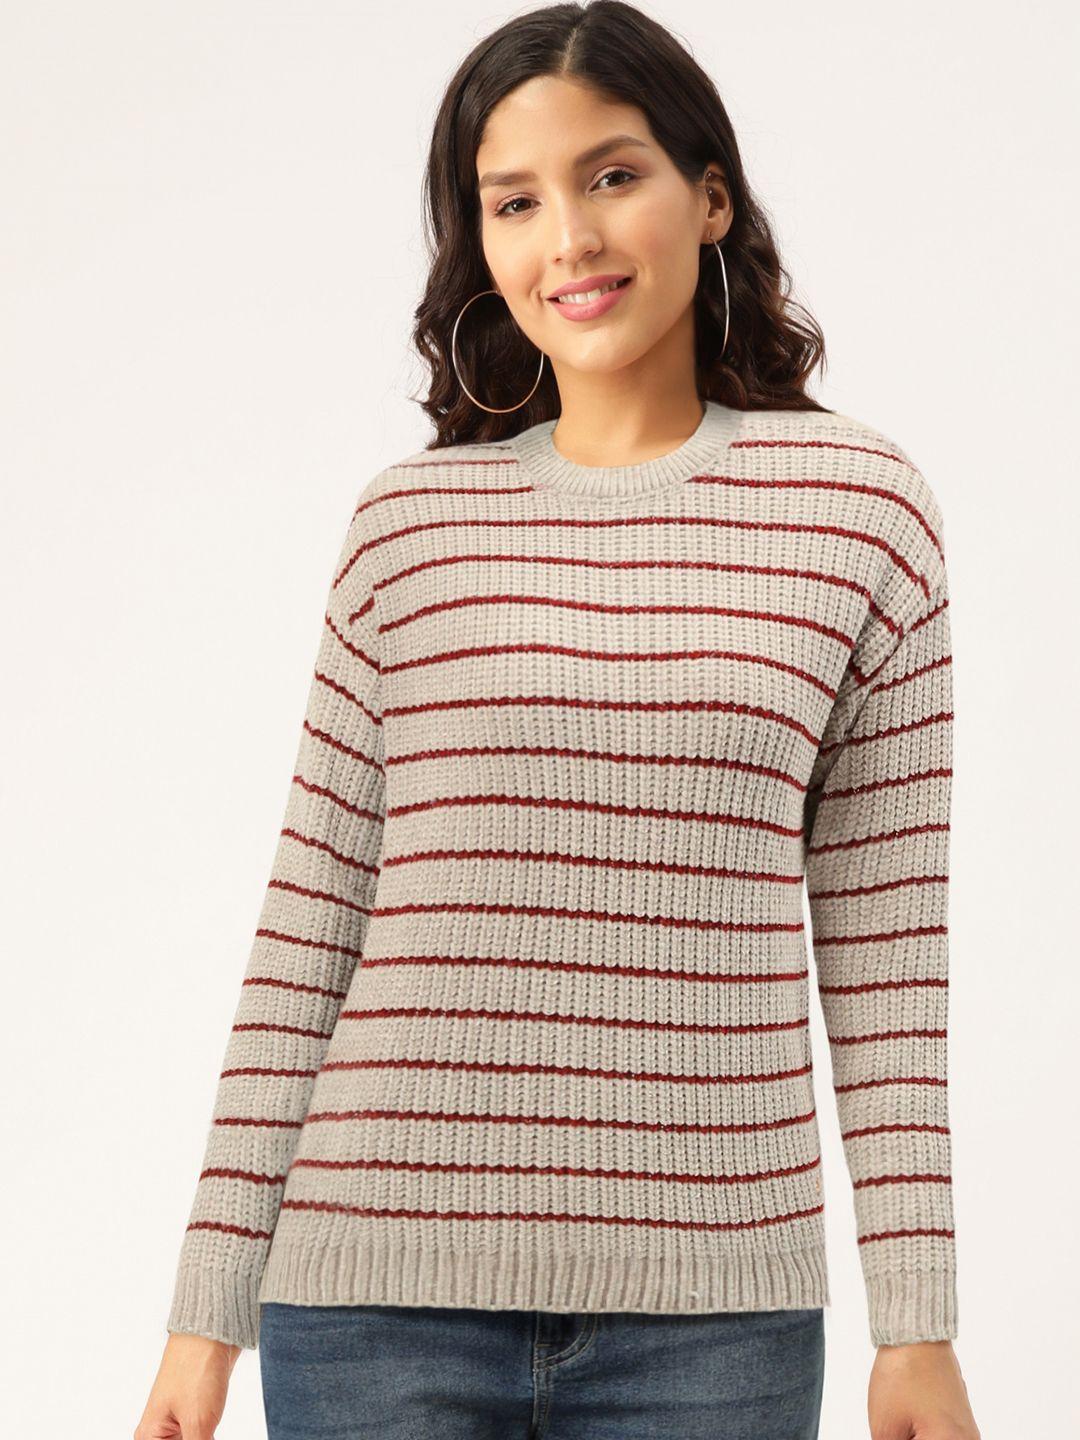 duke women grey & maroon striped pullover sweater